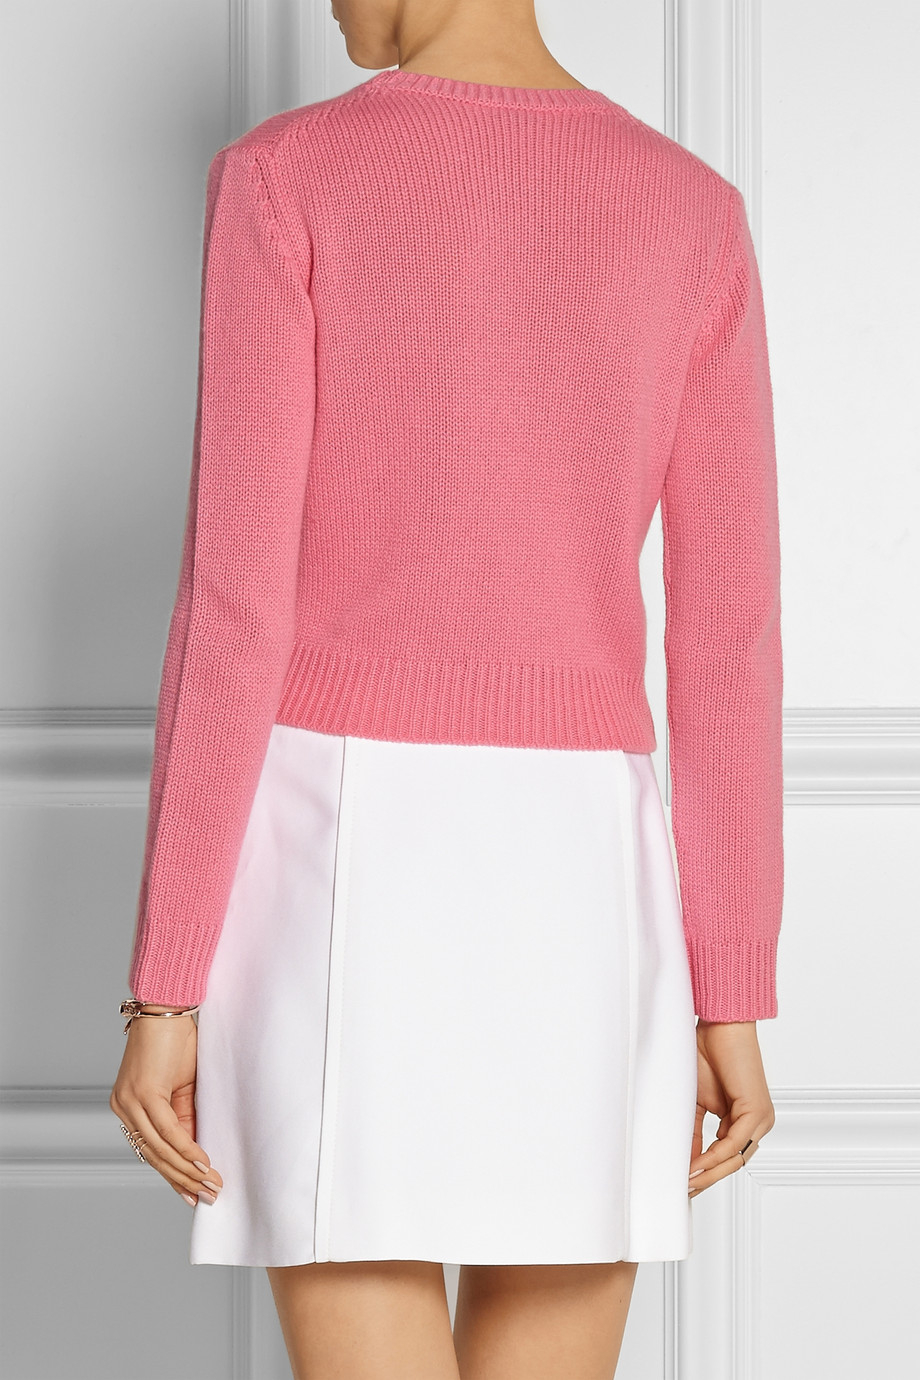 Miu Miu Cropped Cashmere Sweater in Pink - Lyst